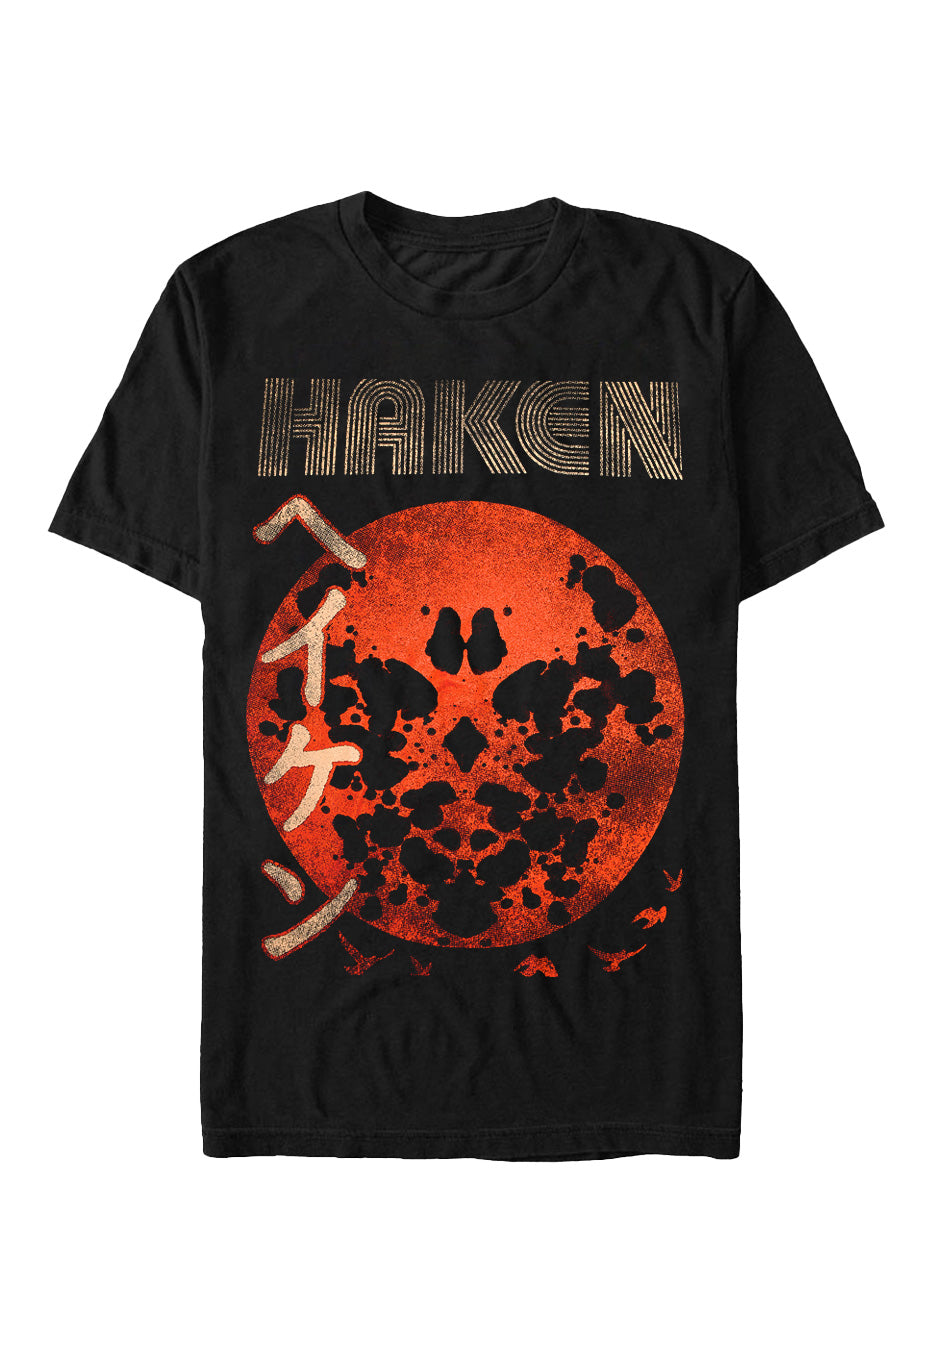 Haken - Japan - T-Shirt